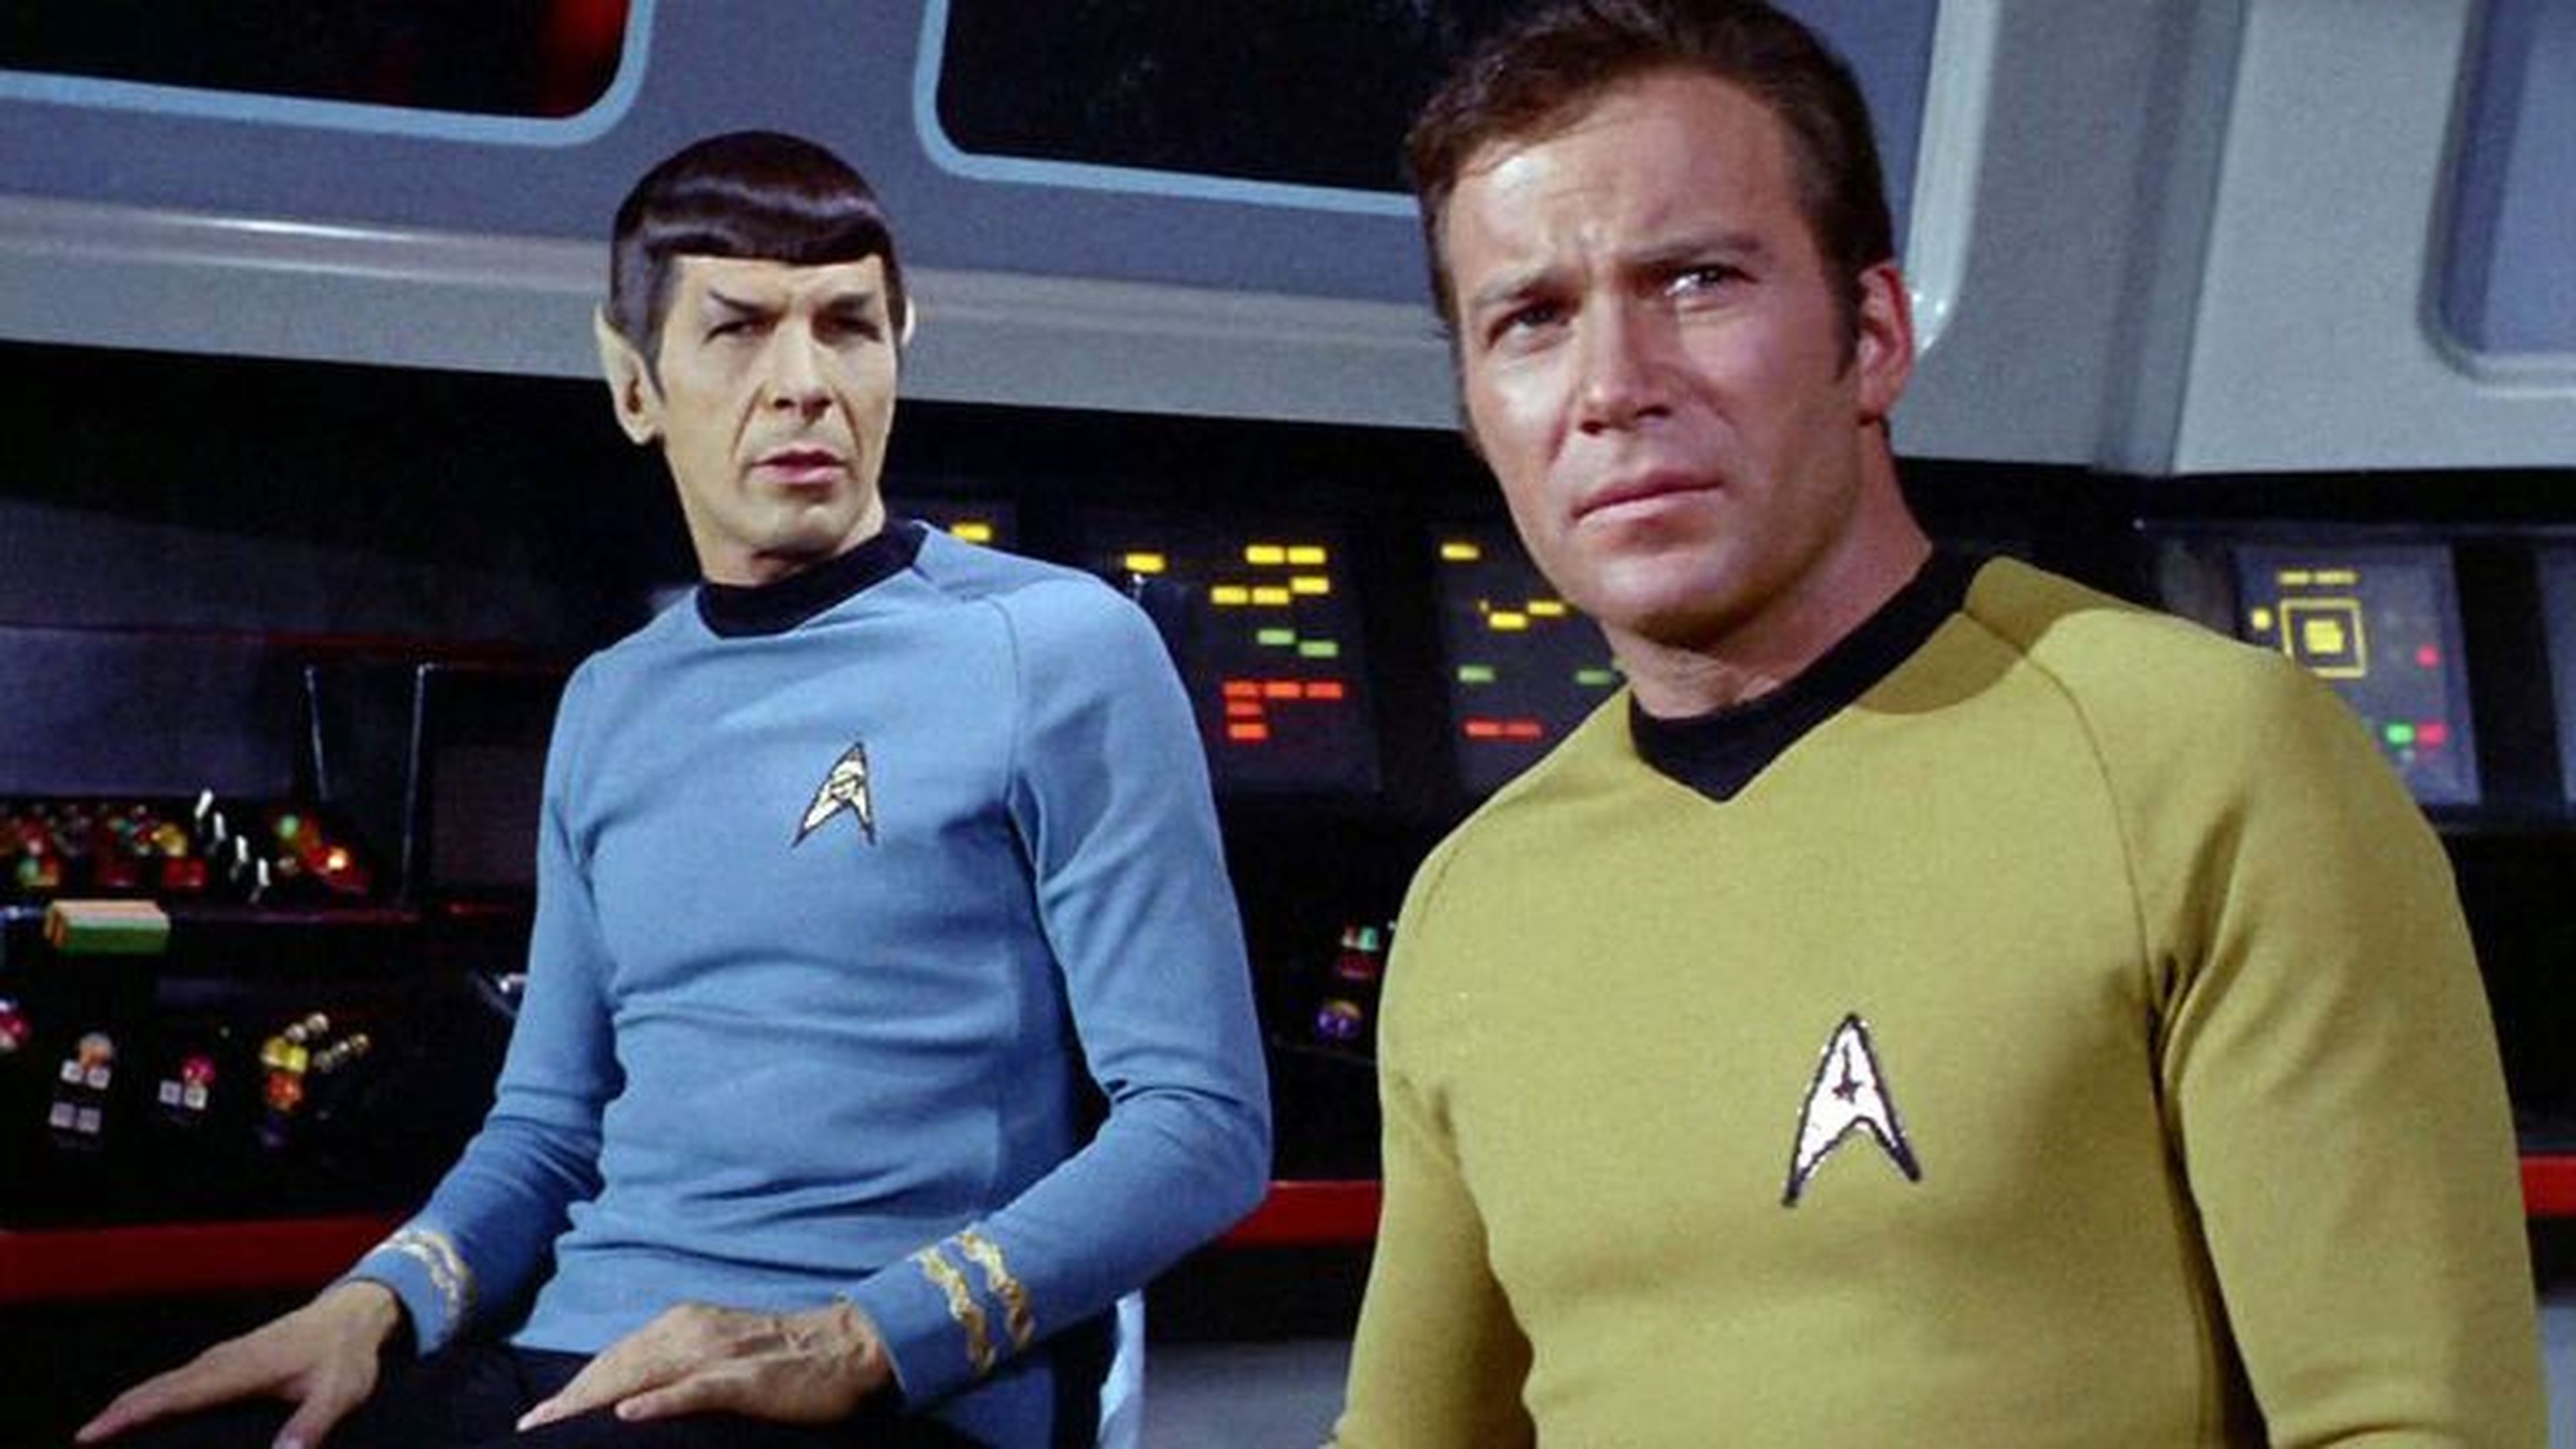 Kirk y Spock mirando de reojo una subasta de sus figuras.